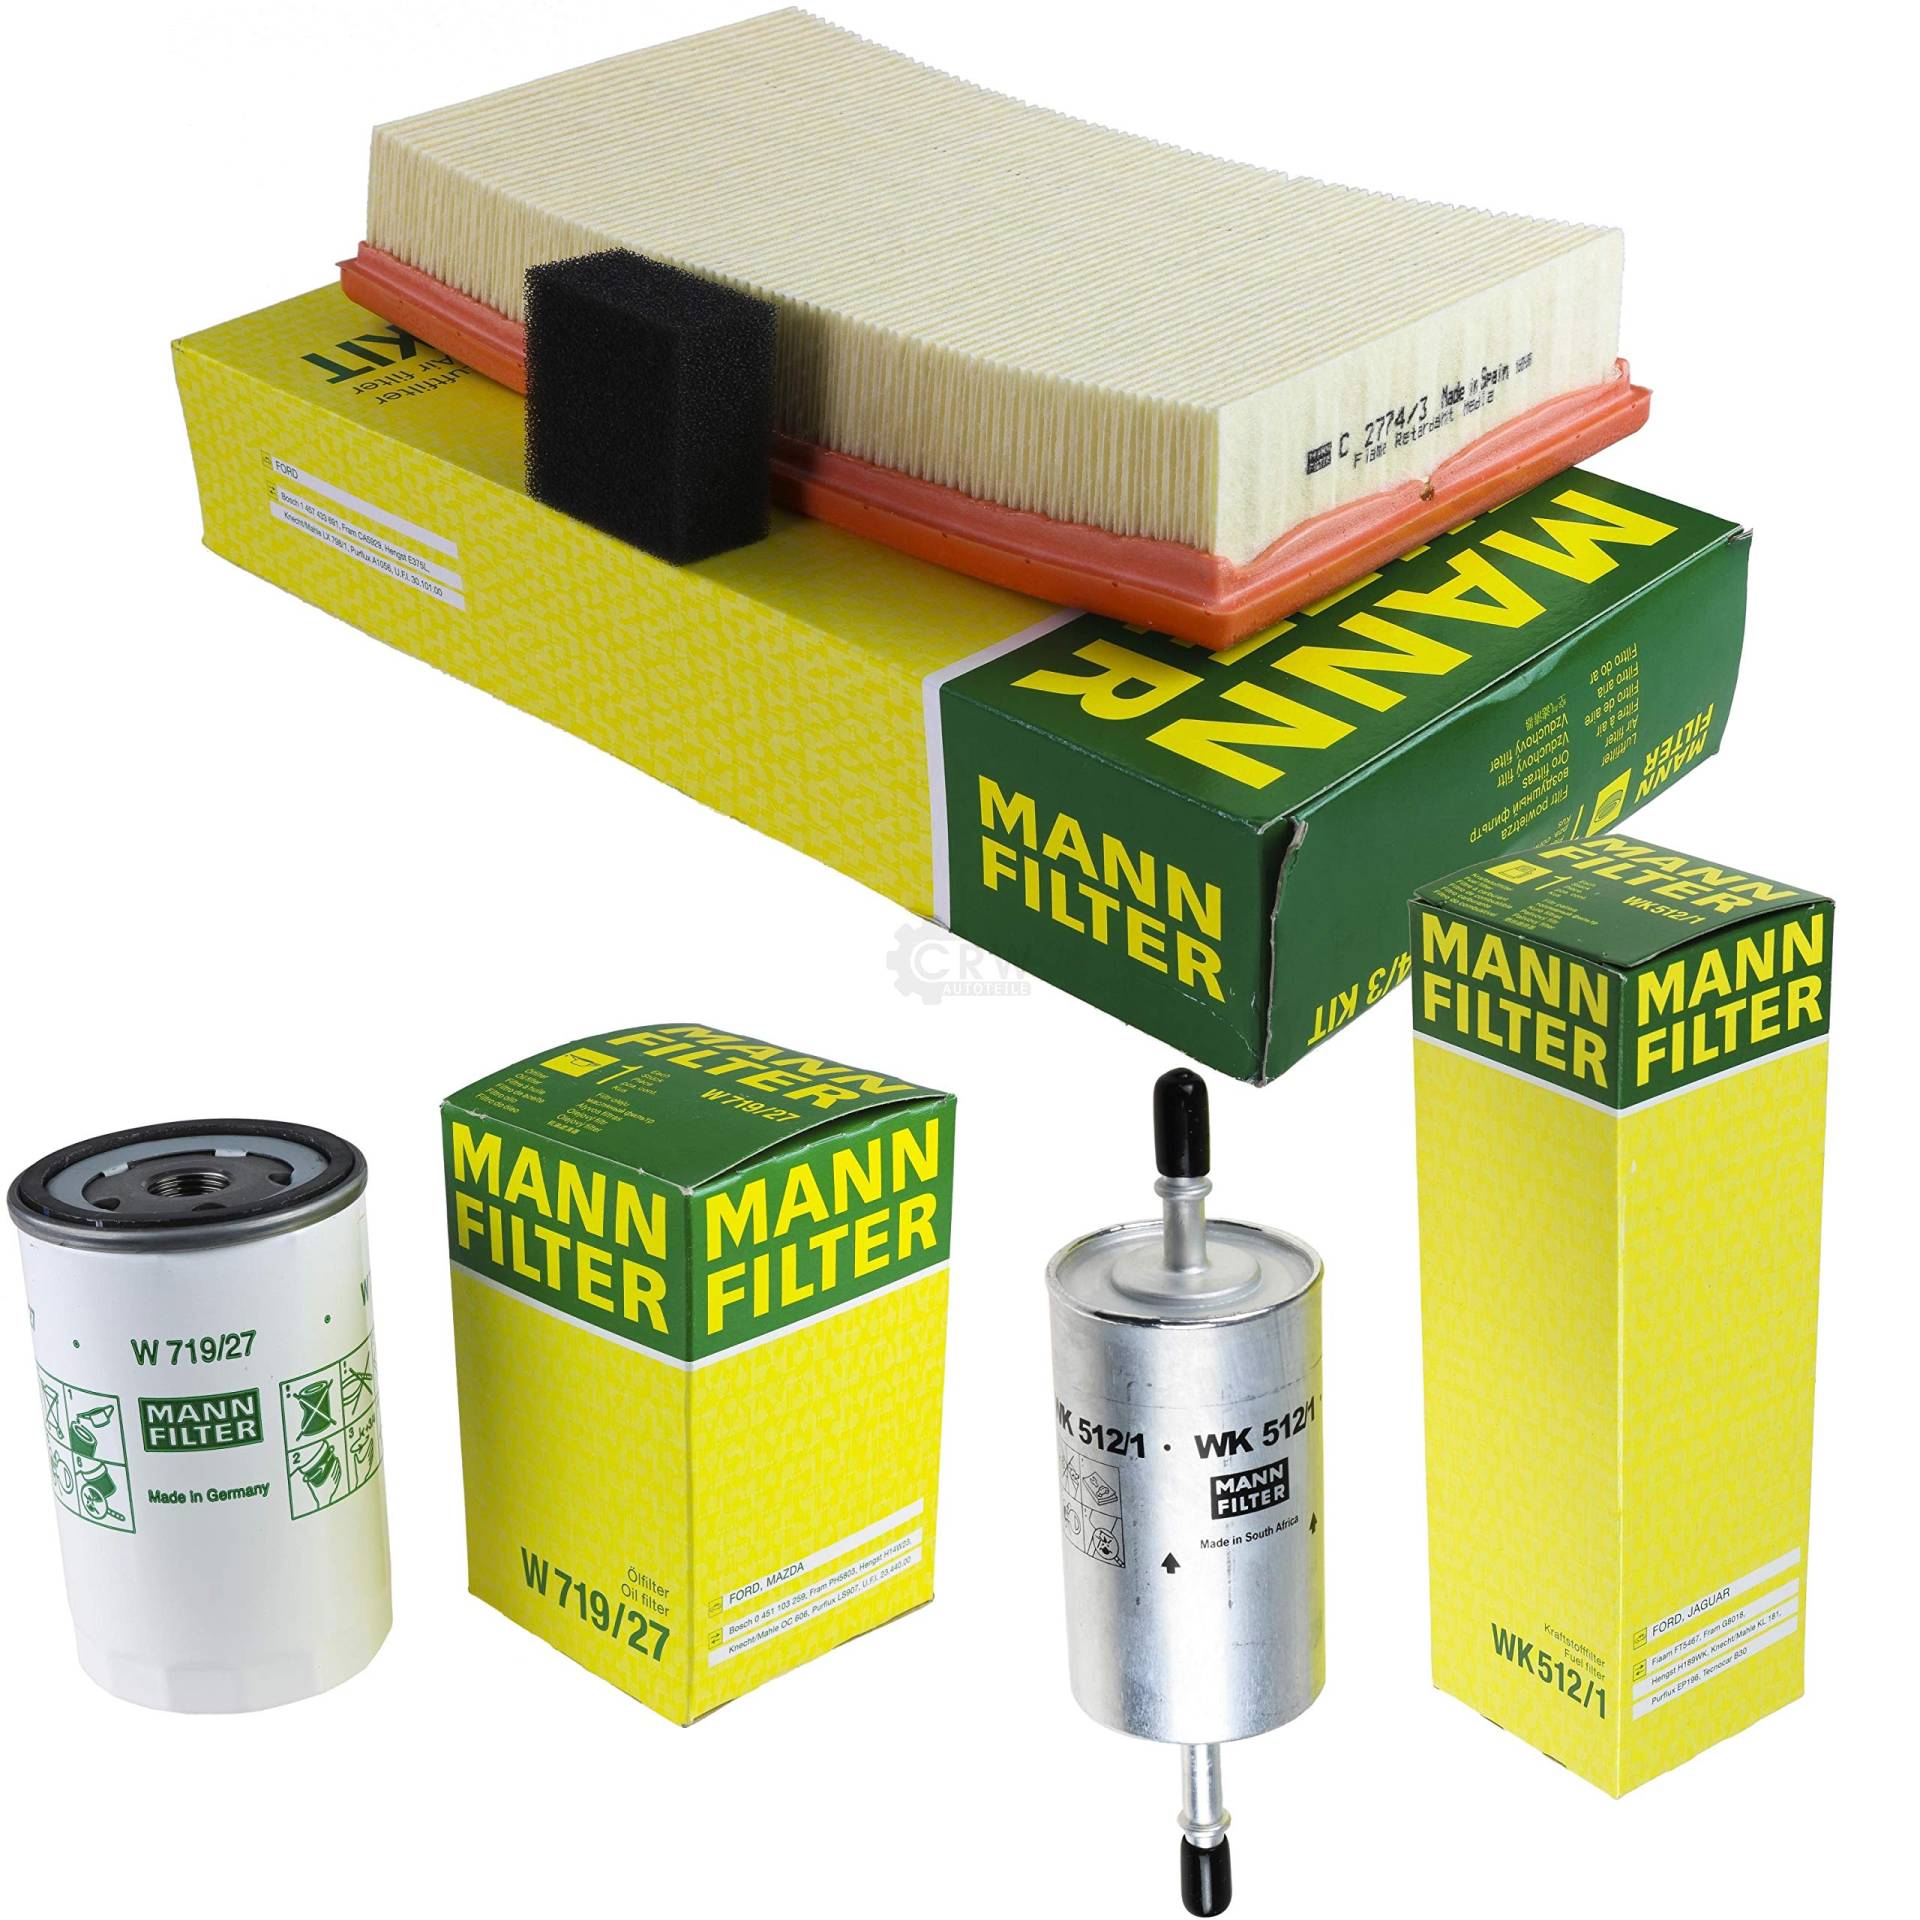 MANN-FILTER Inspektions Set Inspektionspaket Kraftstofffilter Luftfilter Ölfilter von Diederichs